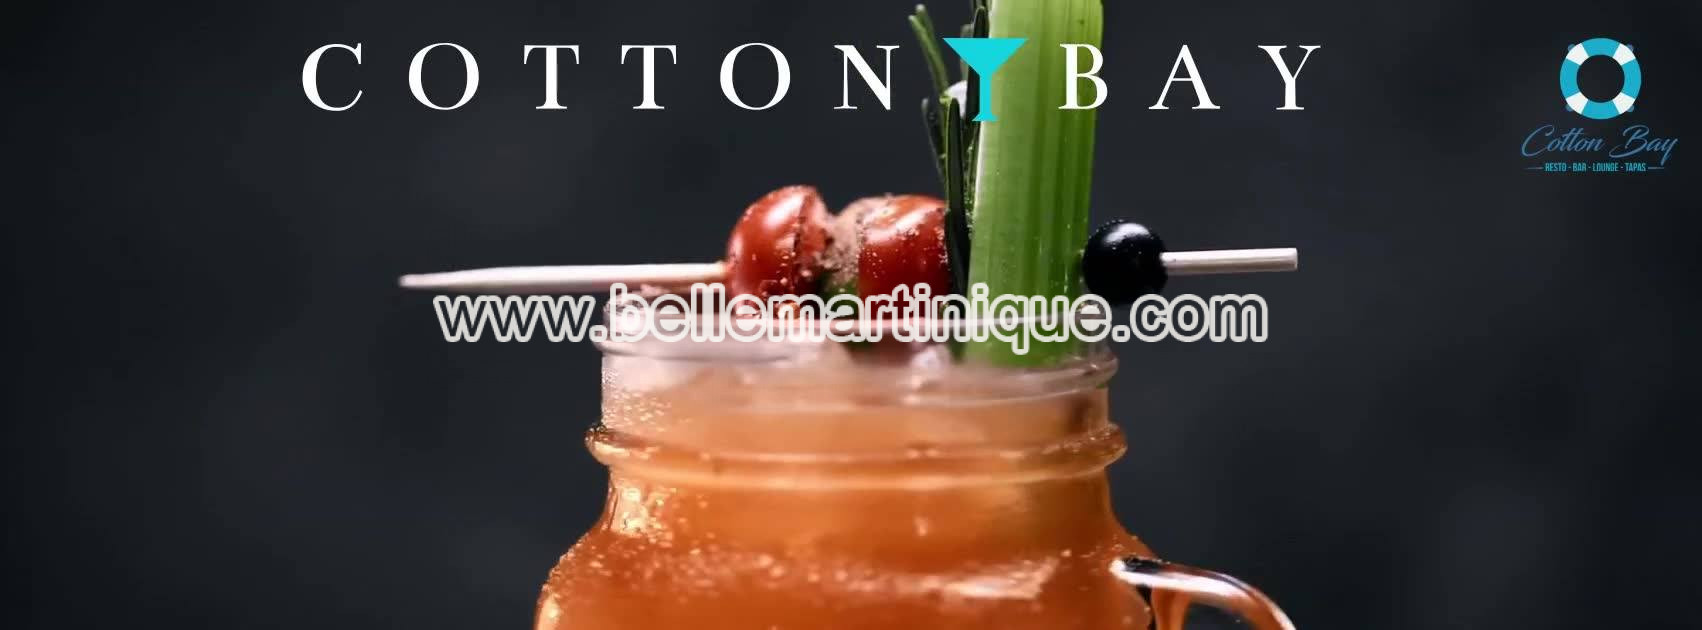 Cotton Bay - Restaurant - Bar Lounge - Tapas - Fort de France - Martinique - Antilles - Caraibes 1